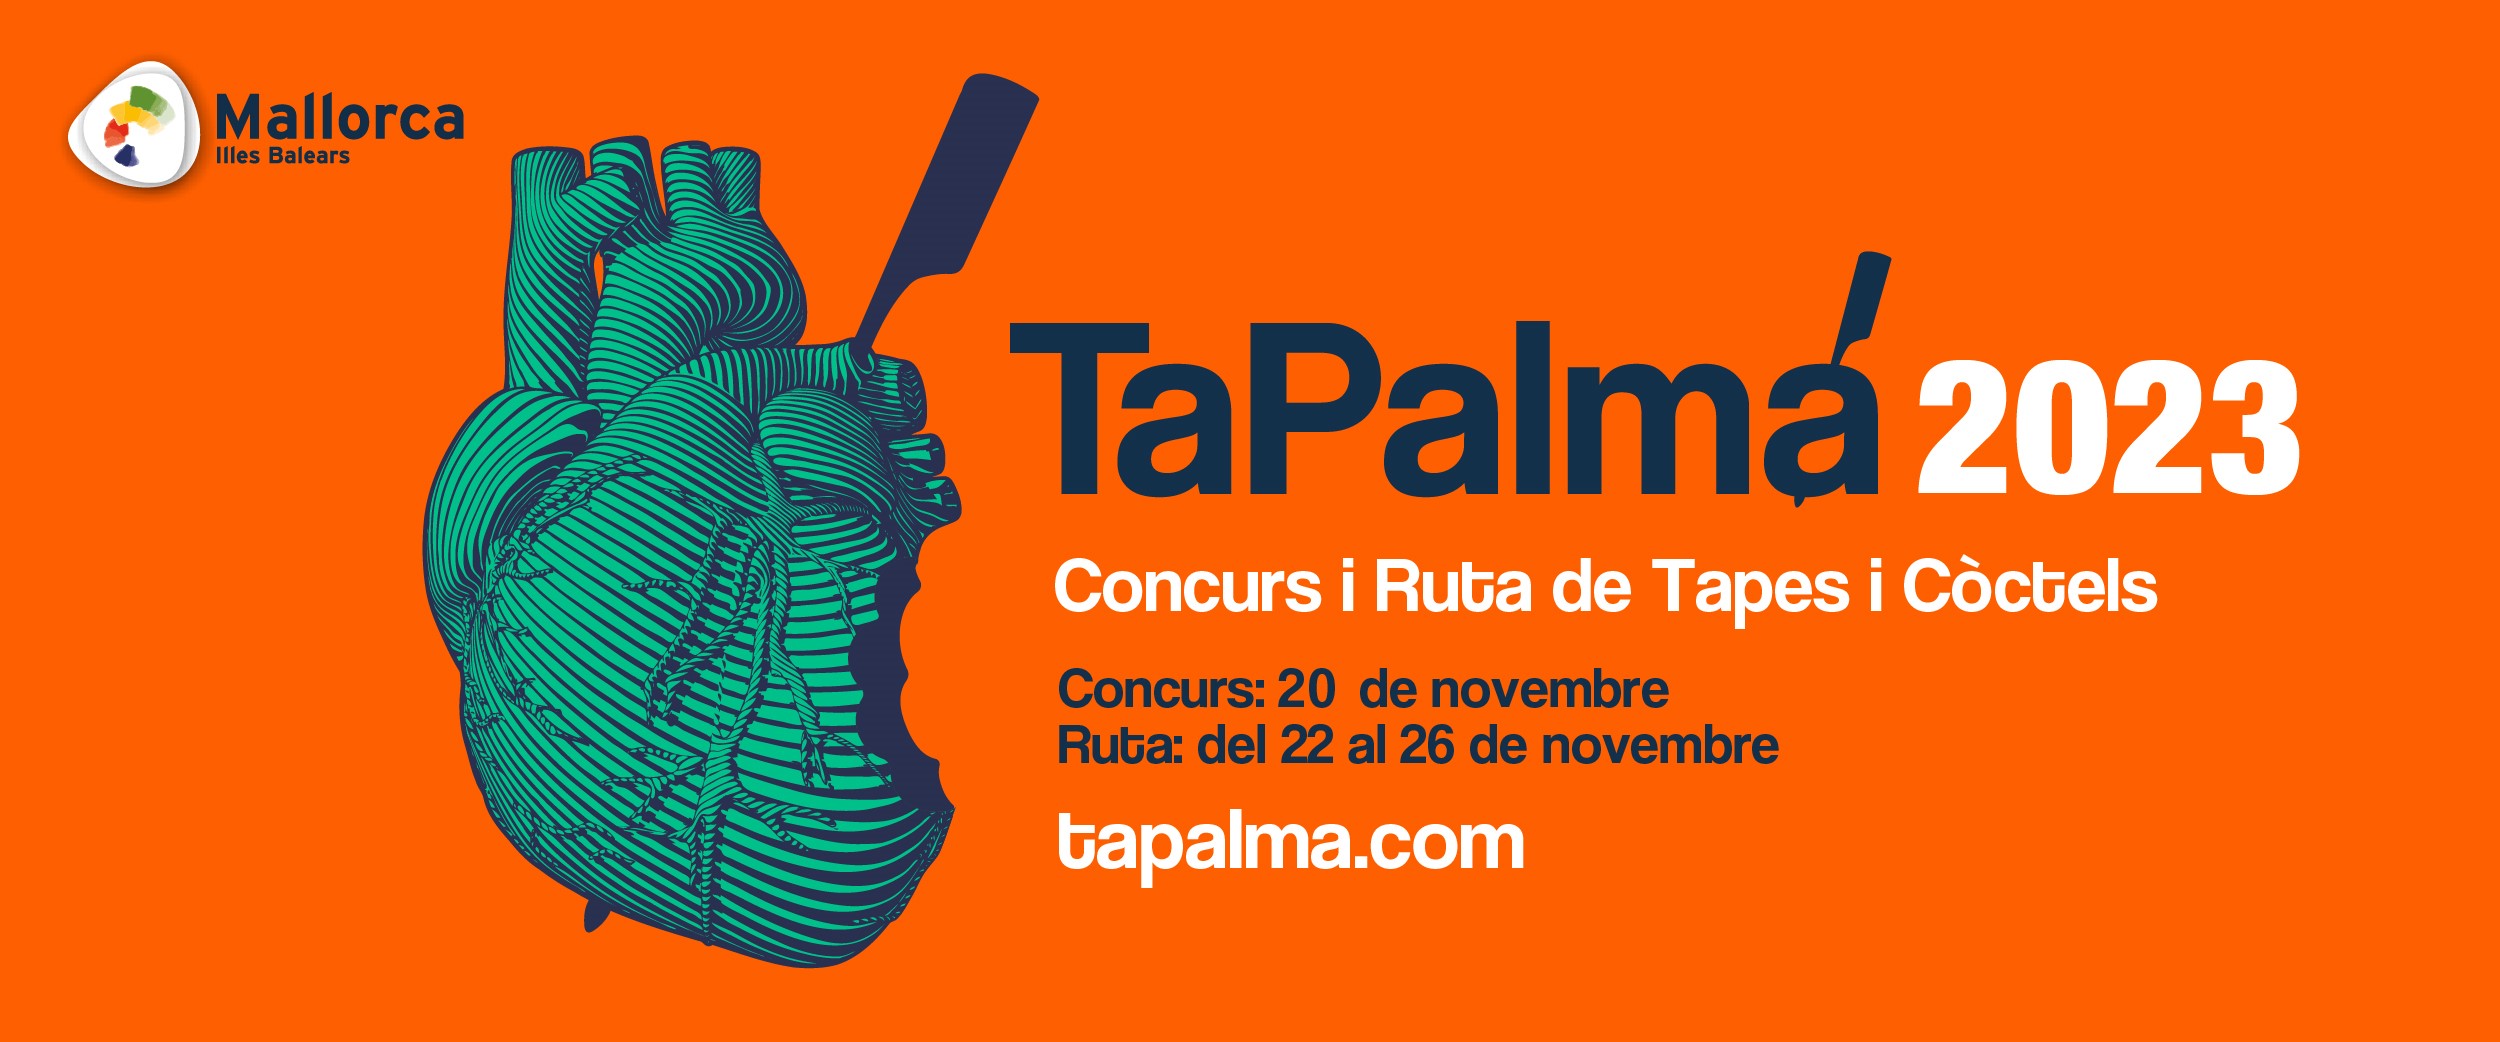 TaPalma 2023 se celebrará del 20 al 26 de noviembre en Palma